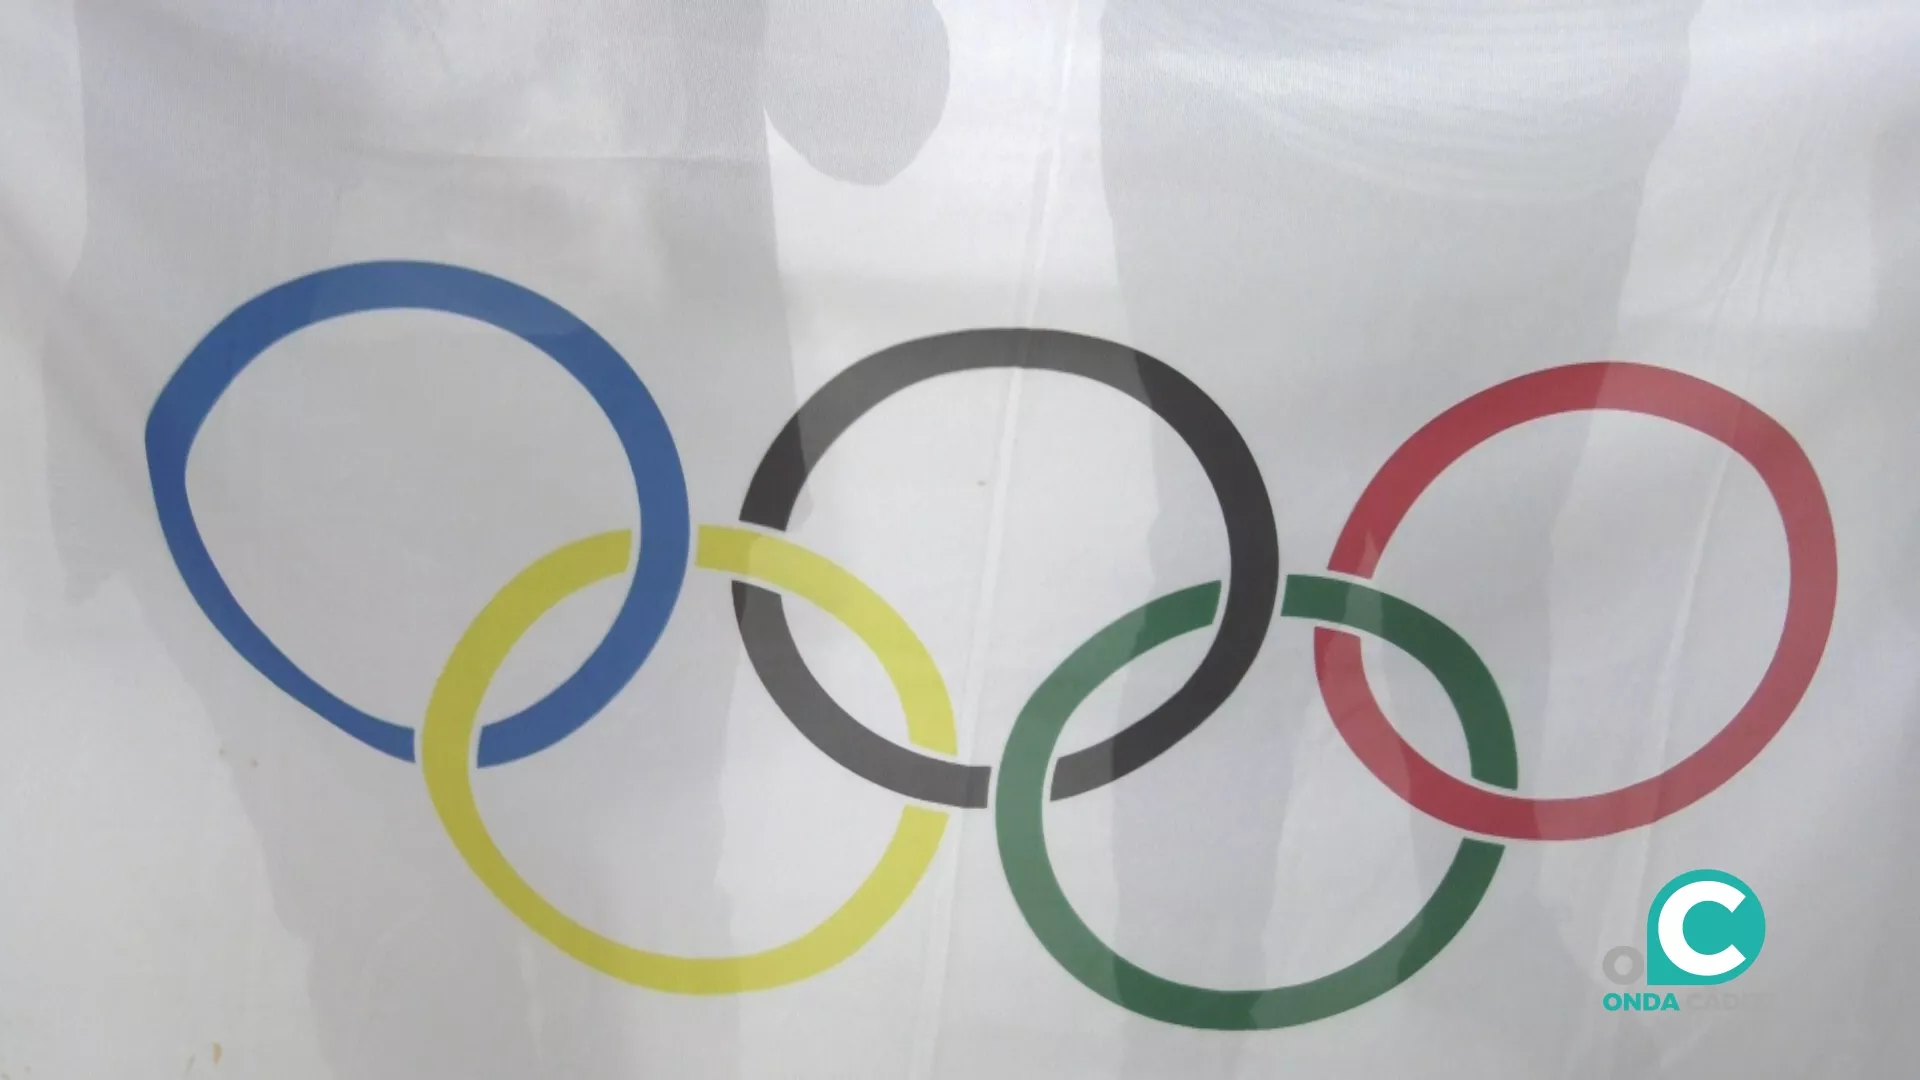 El CEIP Reyes Católicos ha recibido este viernes la bandera olímpica